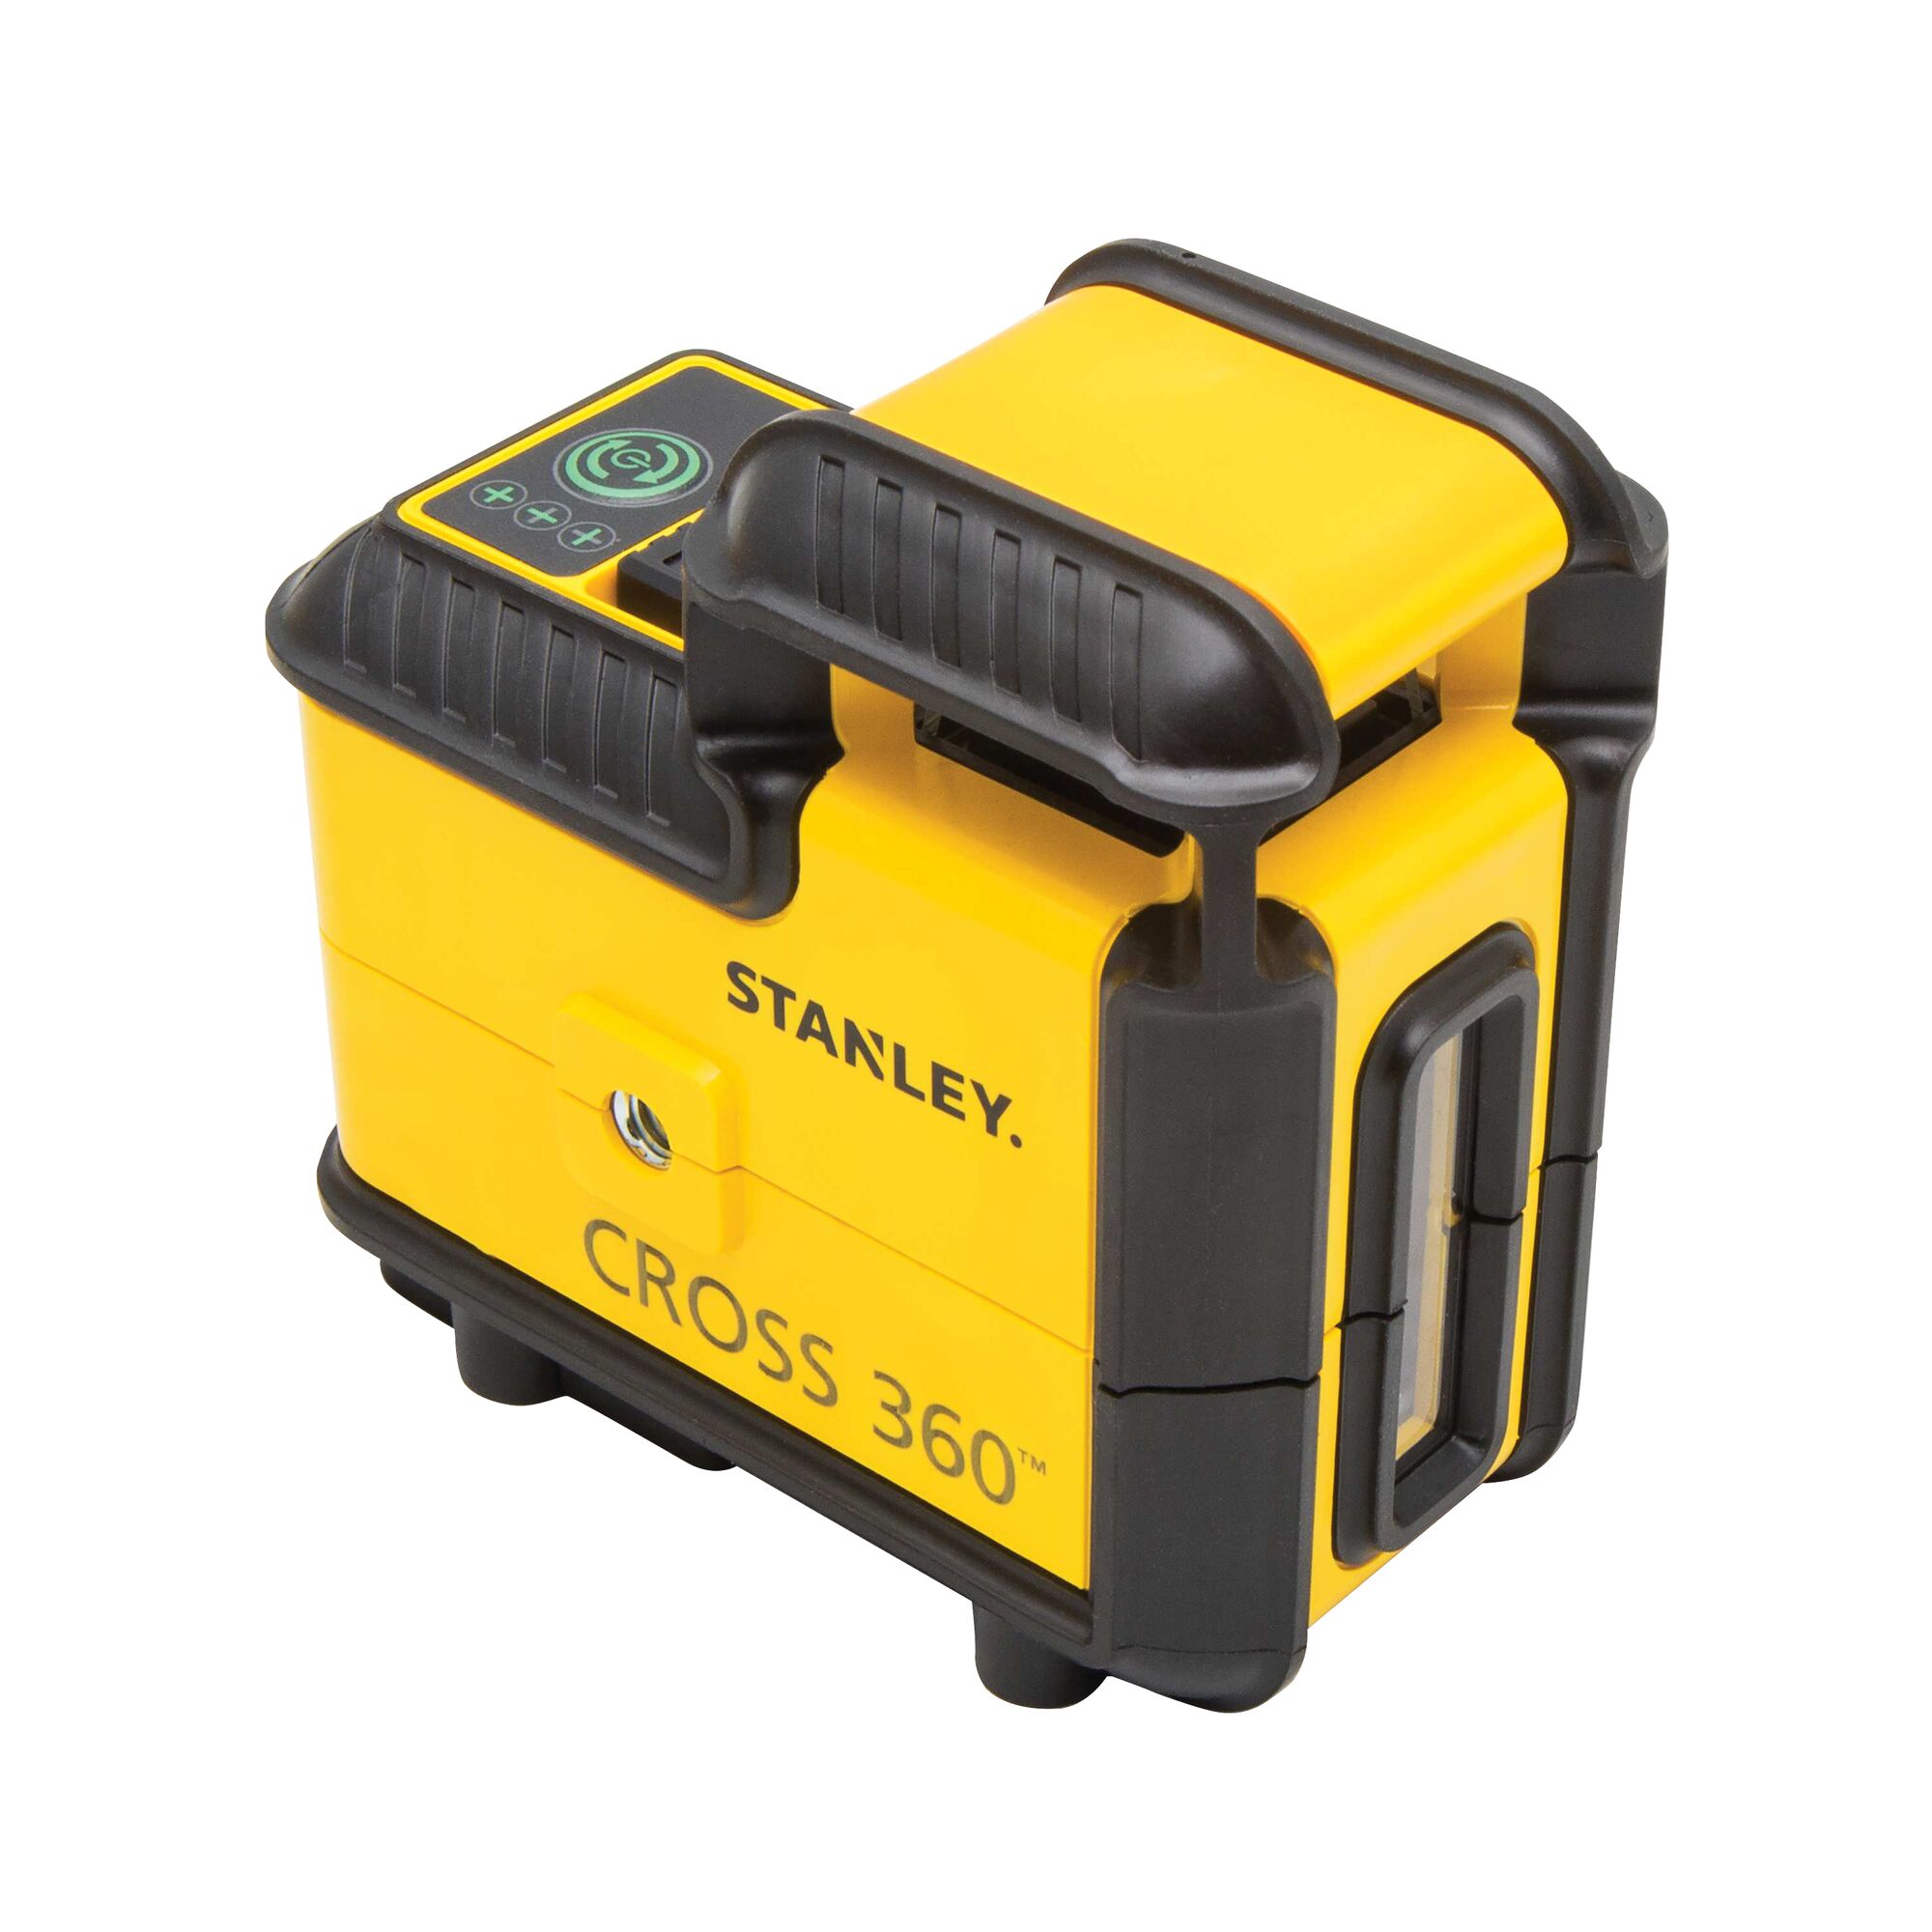 gelb/schwarz Stanley STHT77502-1 Kreuz-un CROSS90 kompakter Linienlaser, mit roter Diode, selbstnivellierend, Laserklasse 2, inkl. Wandhalterung, 2x Batterien und Transporttasche, 1,5 V 